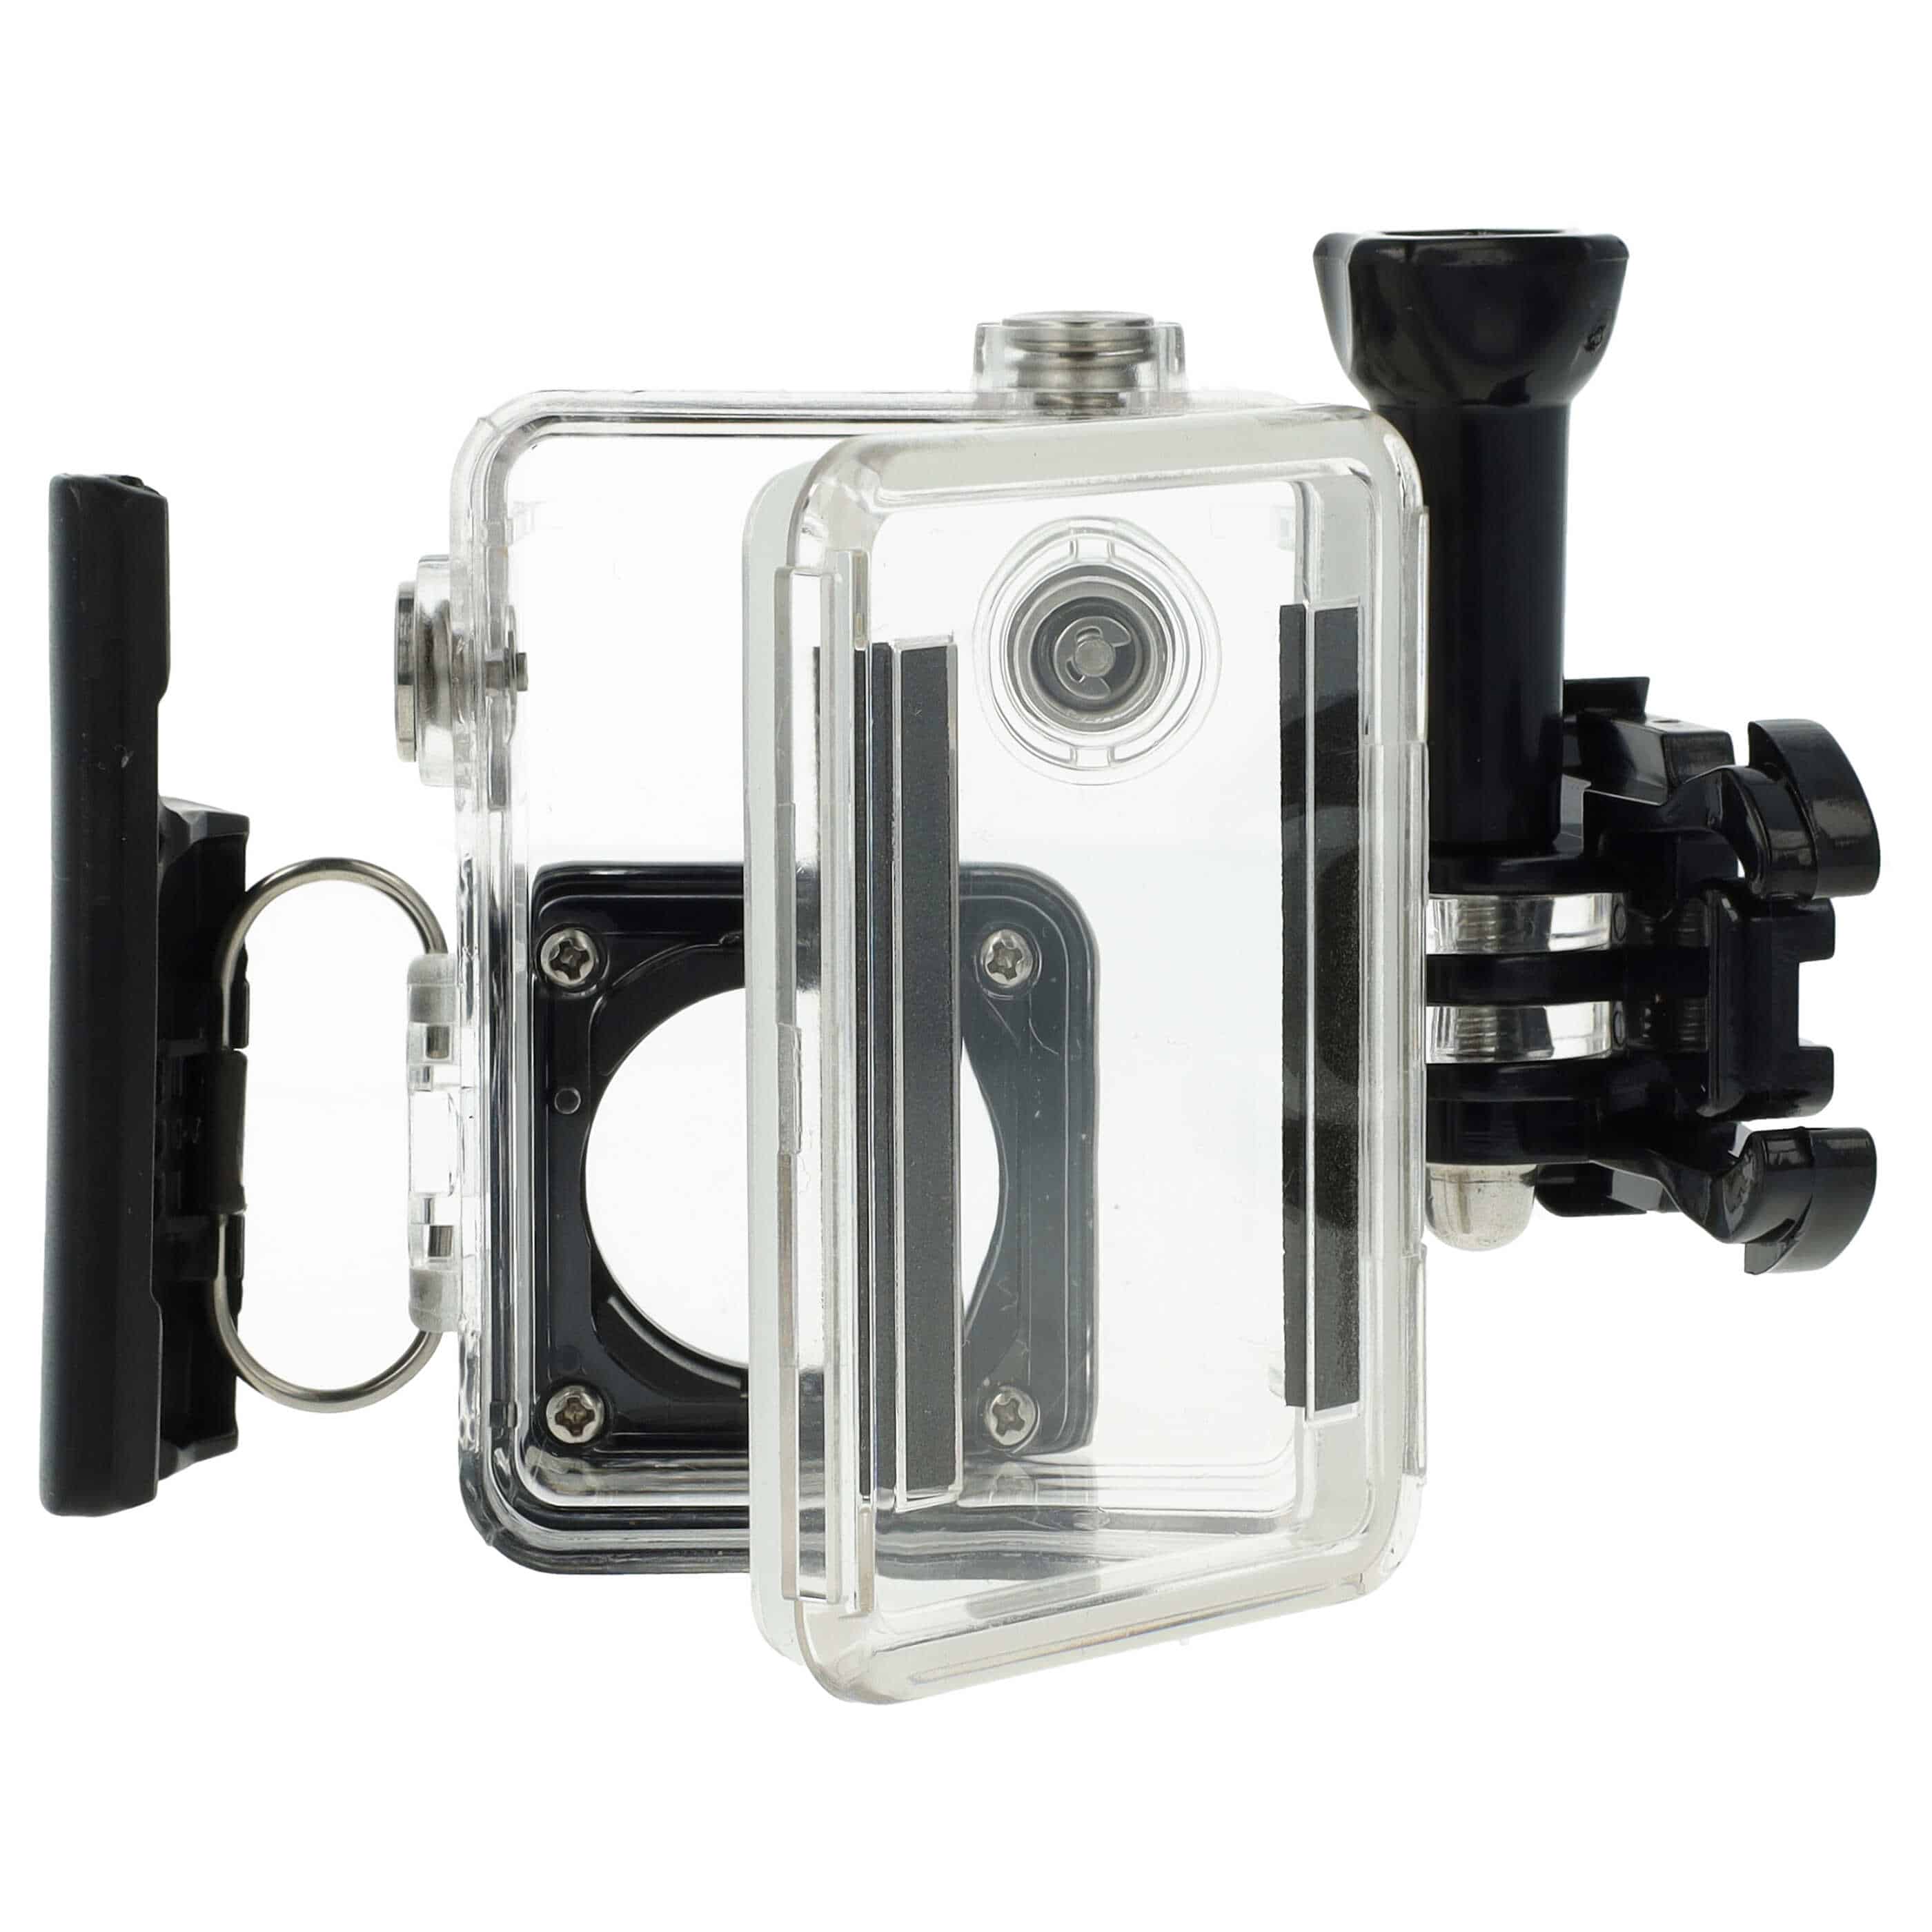 Boîtier étanche pour action cam GoPro Hero 3, 3+, 4 - profondeur max. 45 m